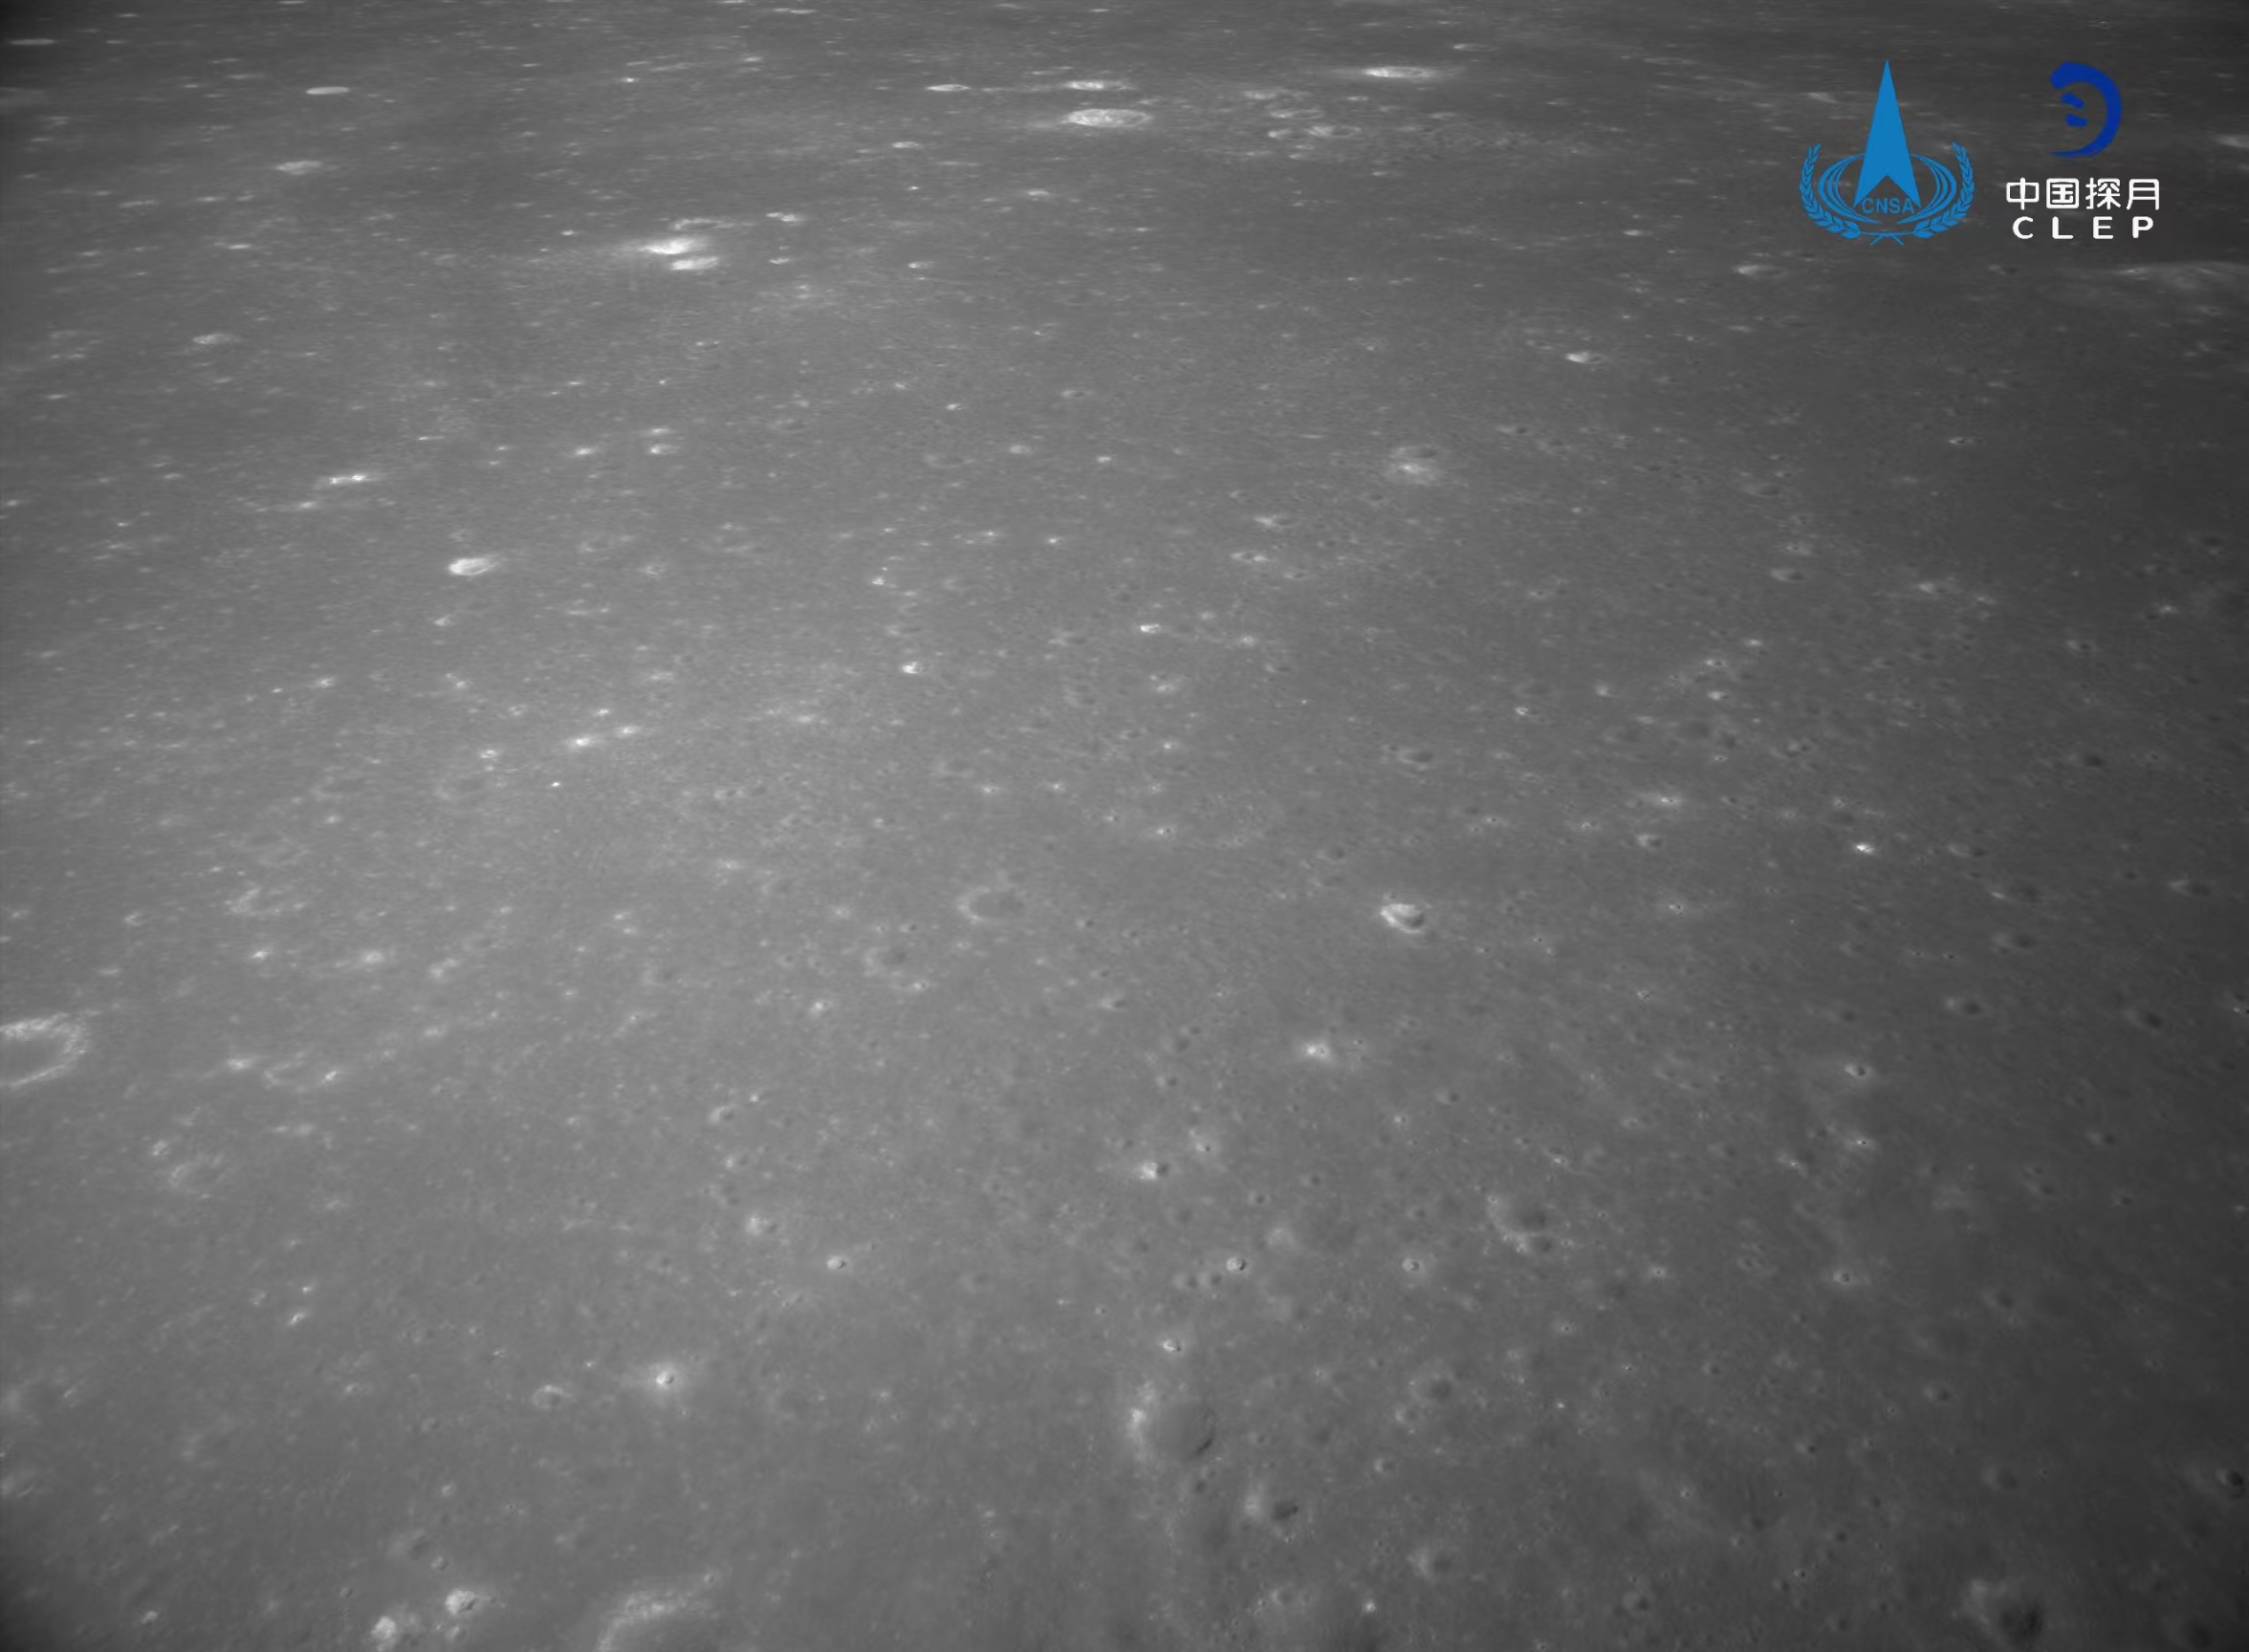 该图由降落相机在降落过程中拍摄，背影图像显示拍摄月背区域中下部和右部分布有多个十多公里直径的像图环形坑�，对着陆点北侧月面拍摄的发布彩色图像镶嵌制作而成。